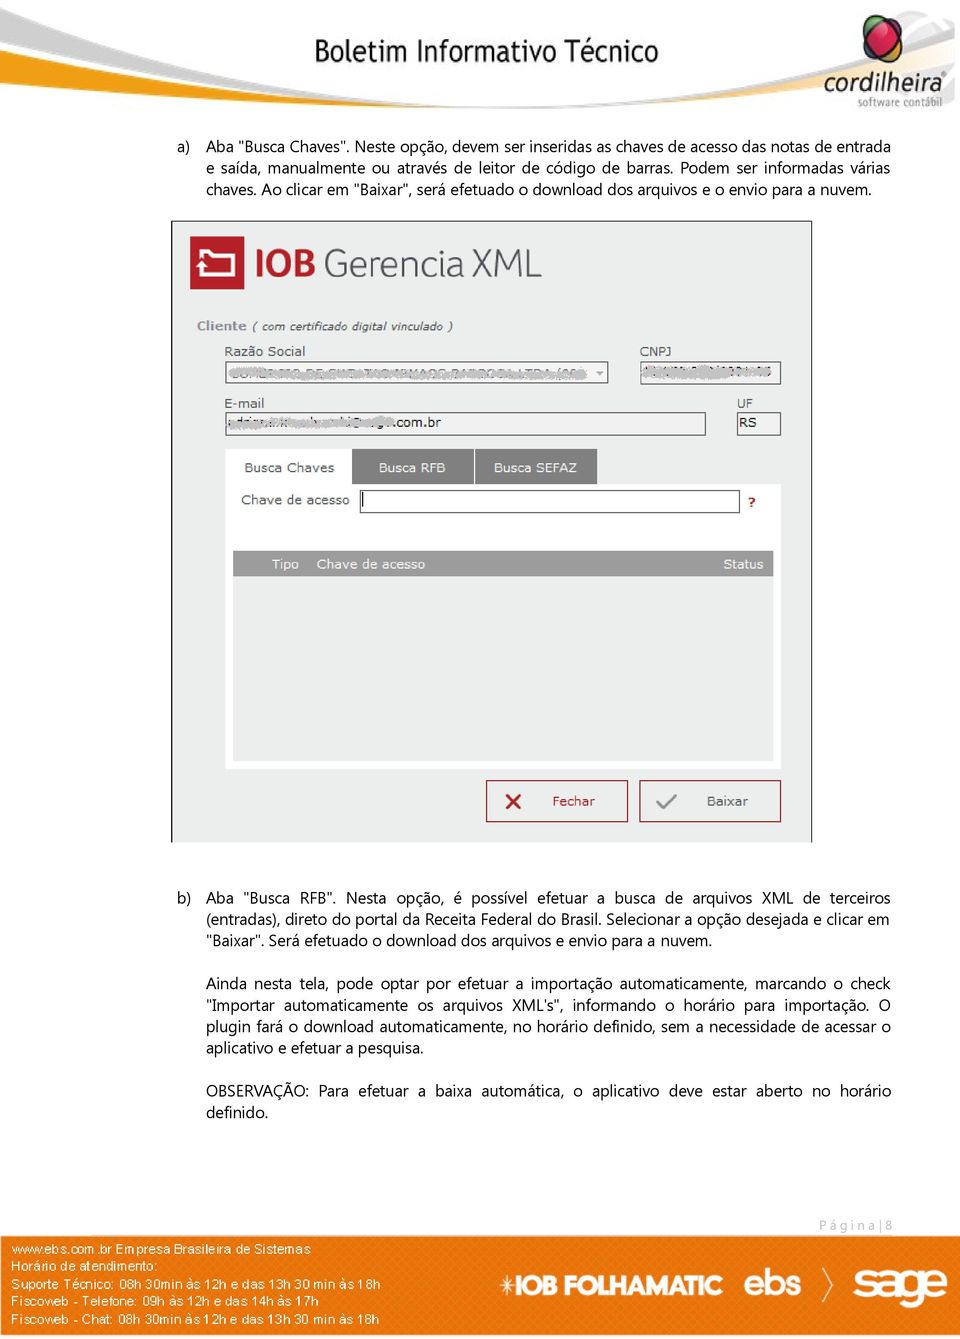 Nesta opção, é possível efetuar a busca de arquivos XML de terceiros (entradas), direto do portal da Receita Federal do Brasil. Selecionar a opção desejada e clicar em "Baixar".